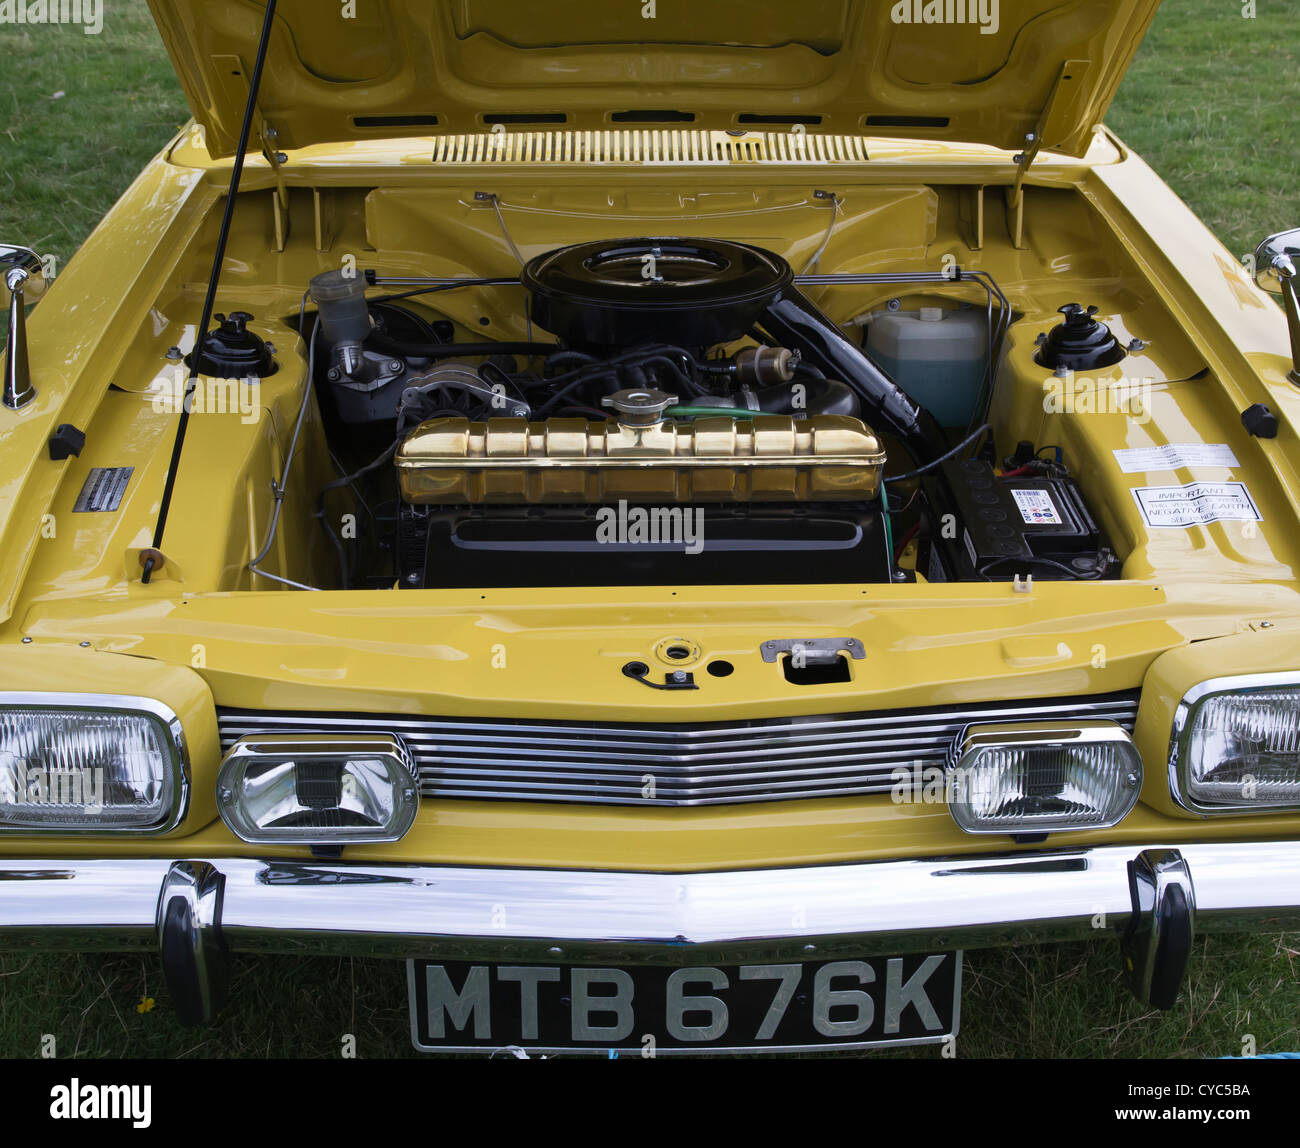 mk1 ford capri v6 3000e engine Stock Photo